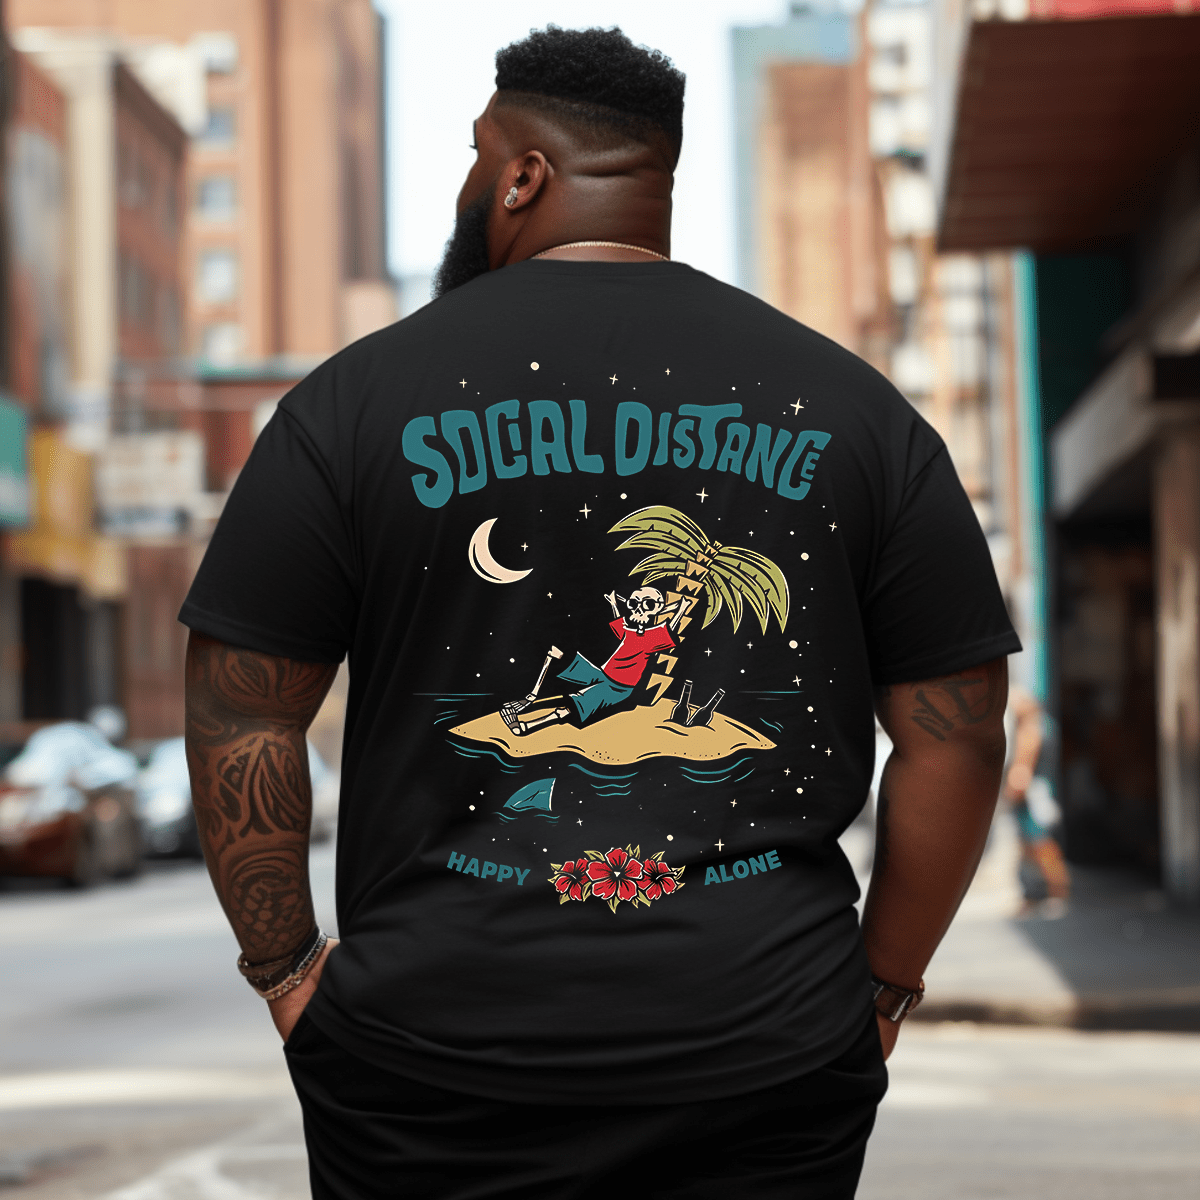 Social Distances Plus Size Men T-Shirt